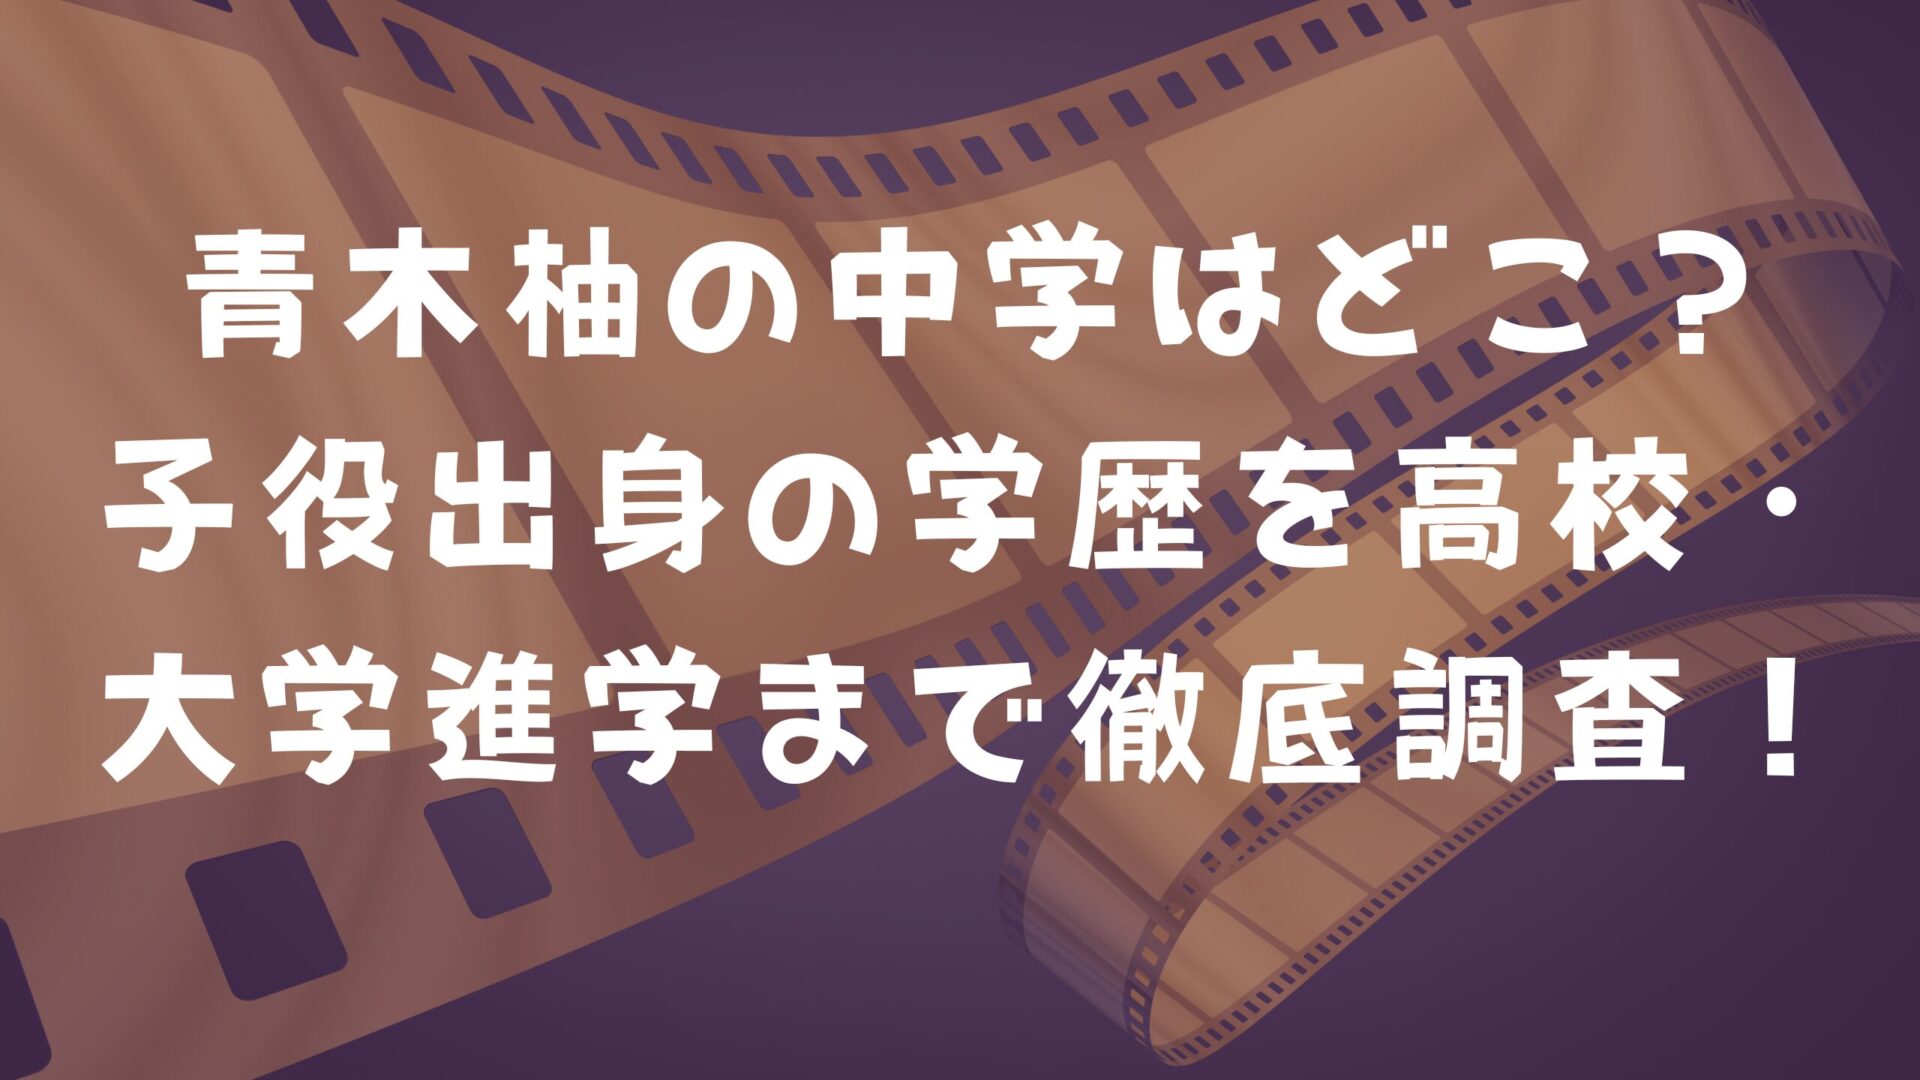 青木柚さんの記事タイトルと映画フィルムの画像背景